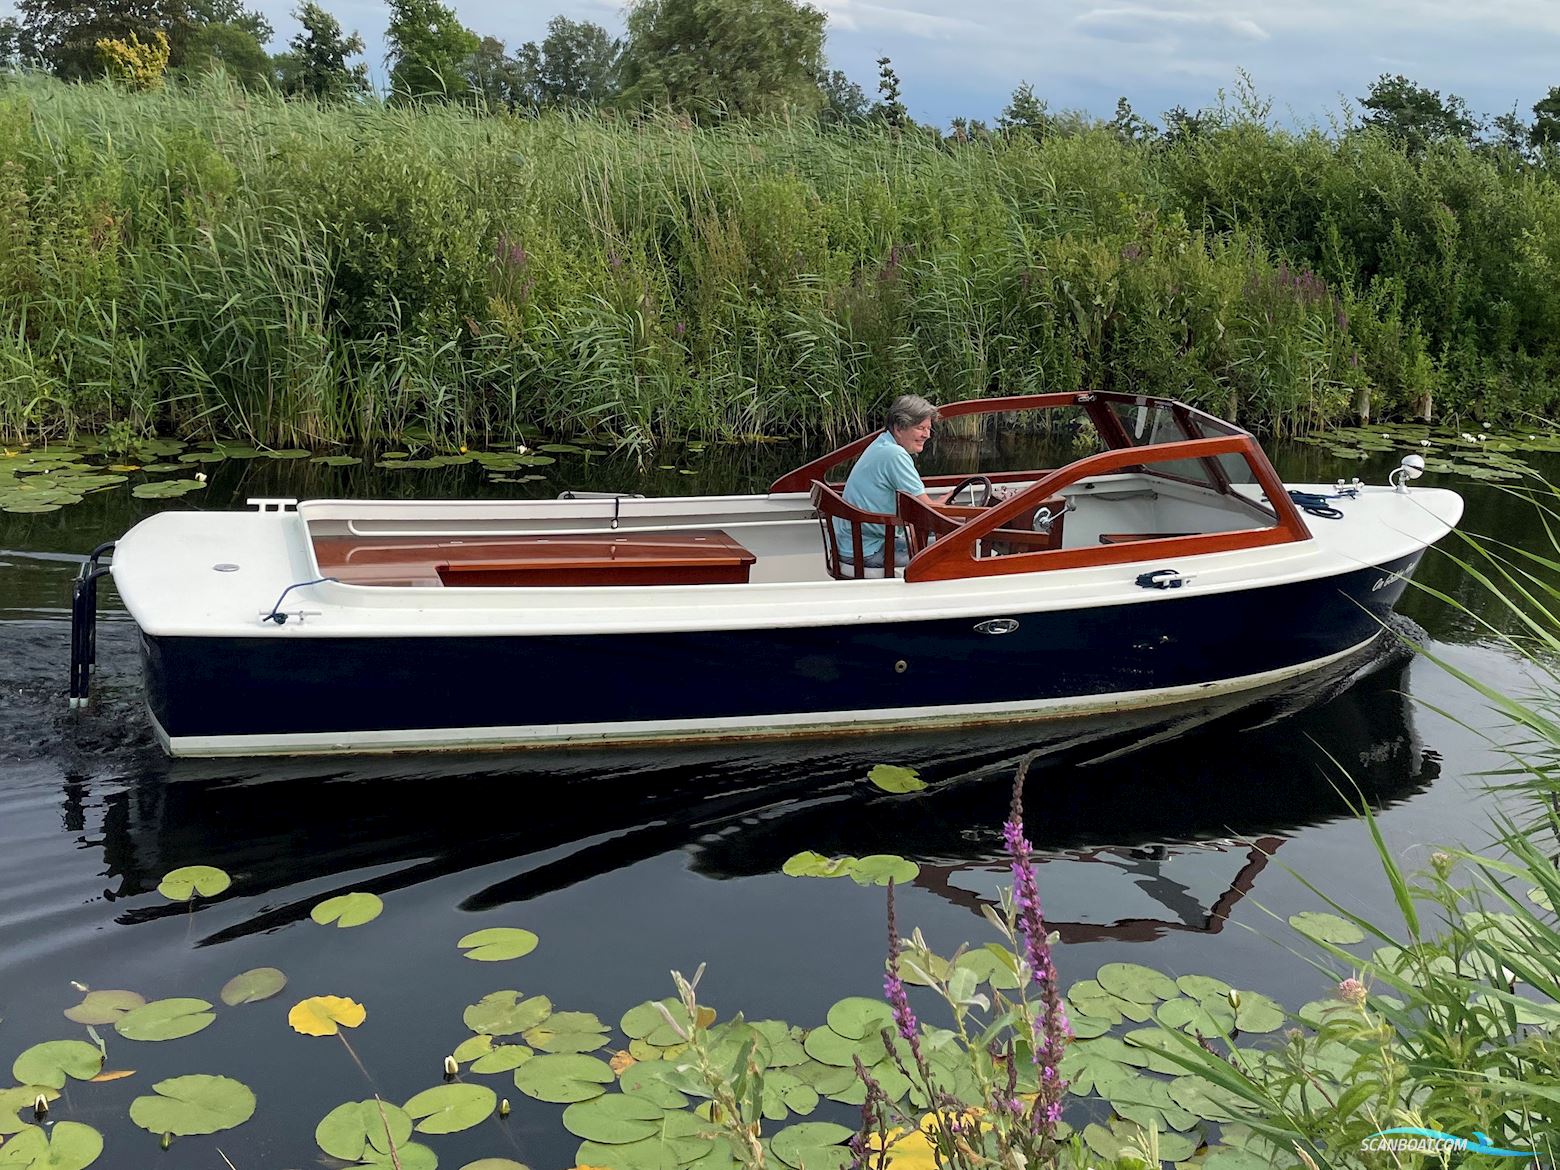 Runabout Sloep 630 Klassieke Launch Motorbåt 2017, med Ruggerini motor, Holland